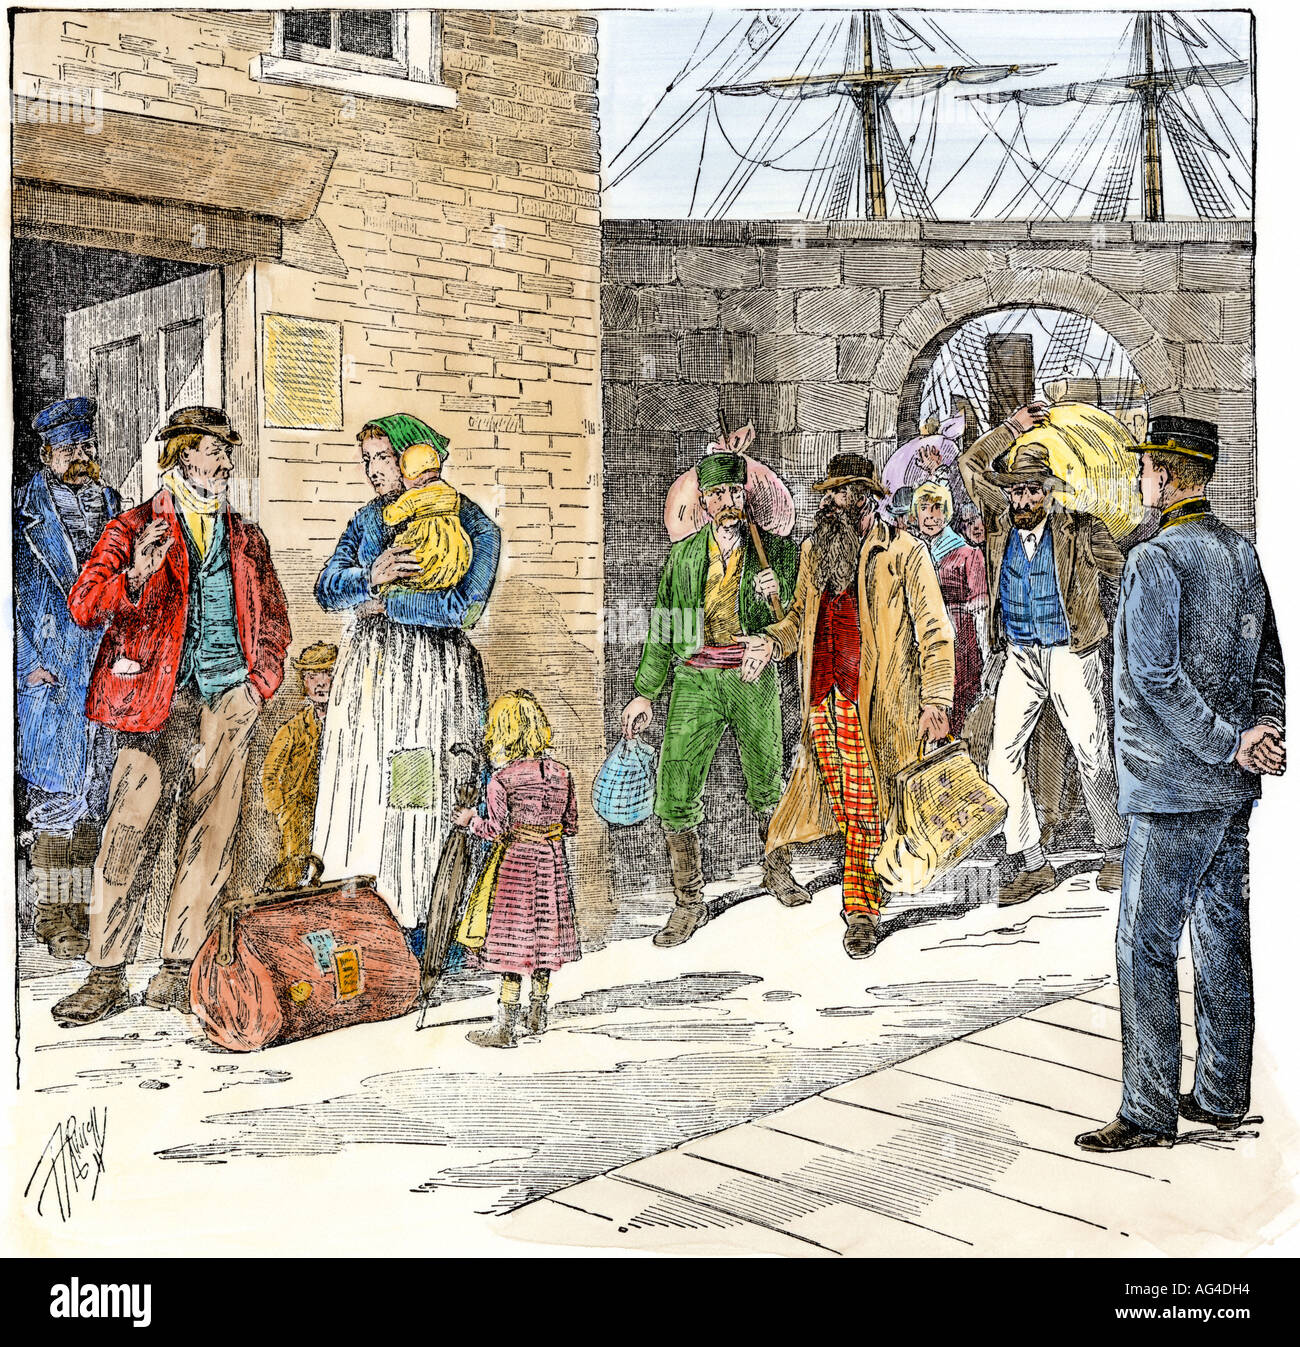 Les immigrants arrivant de contrat comme ouvriers dans un port américain des années 1800. À la main, gravure sur bois Banque D'Images